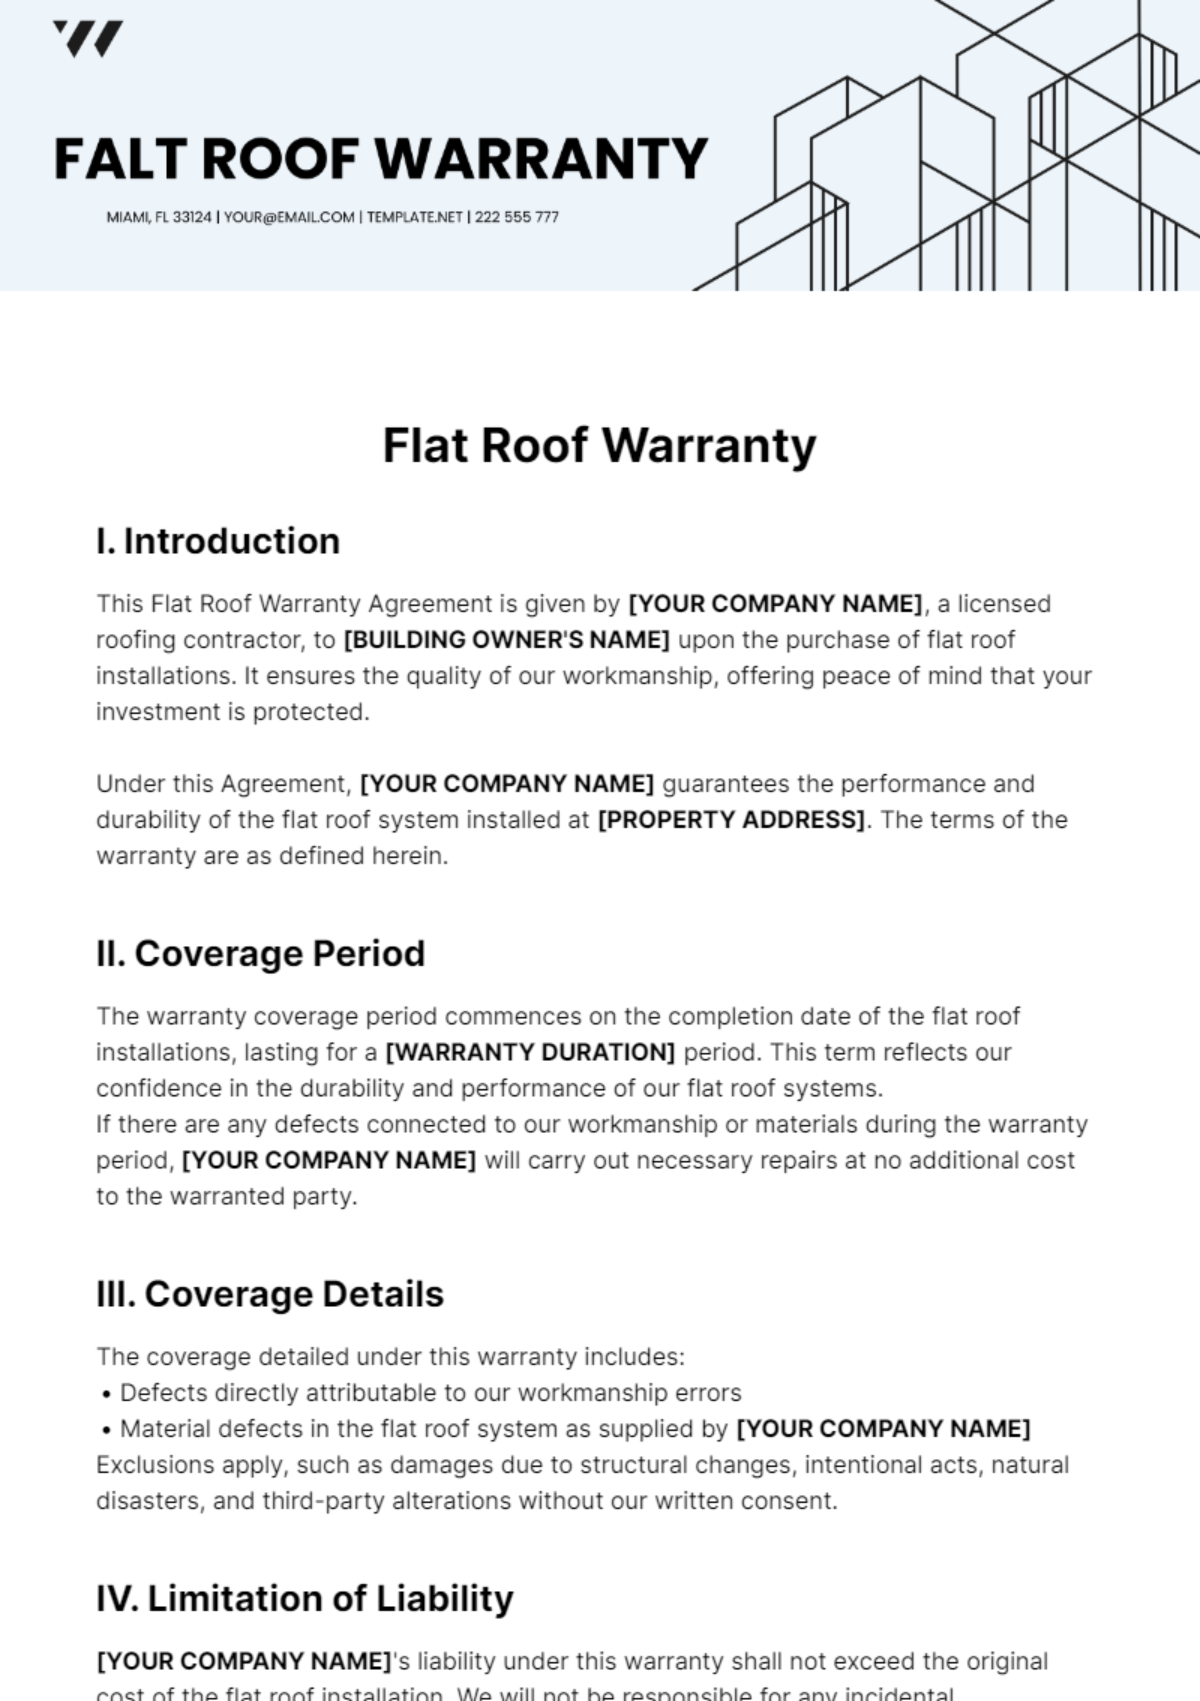 Flat Roof Warranty Template